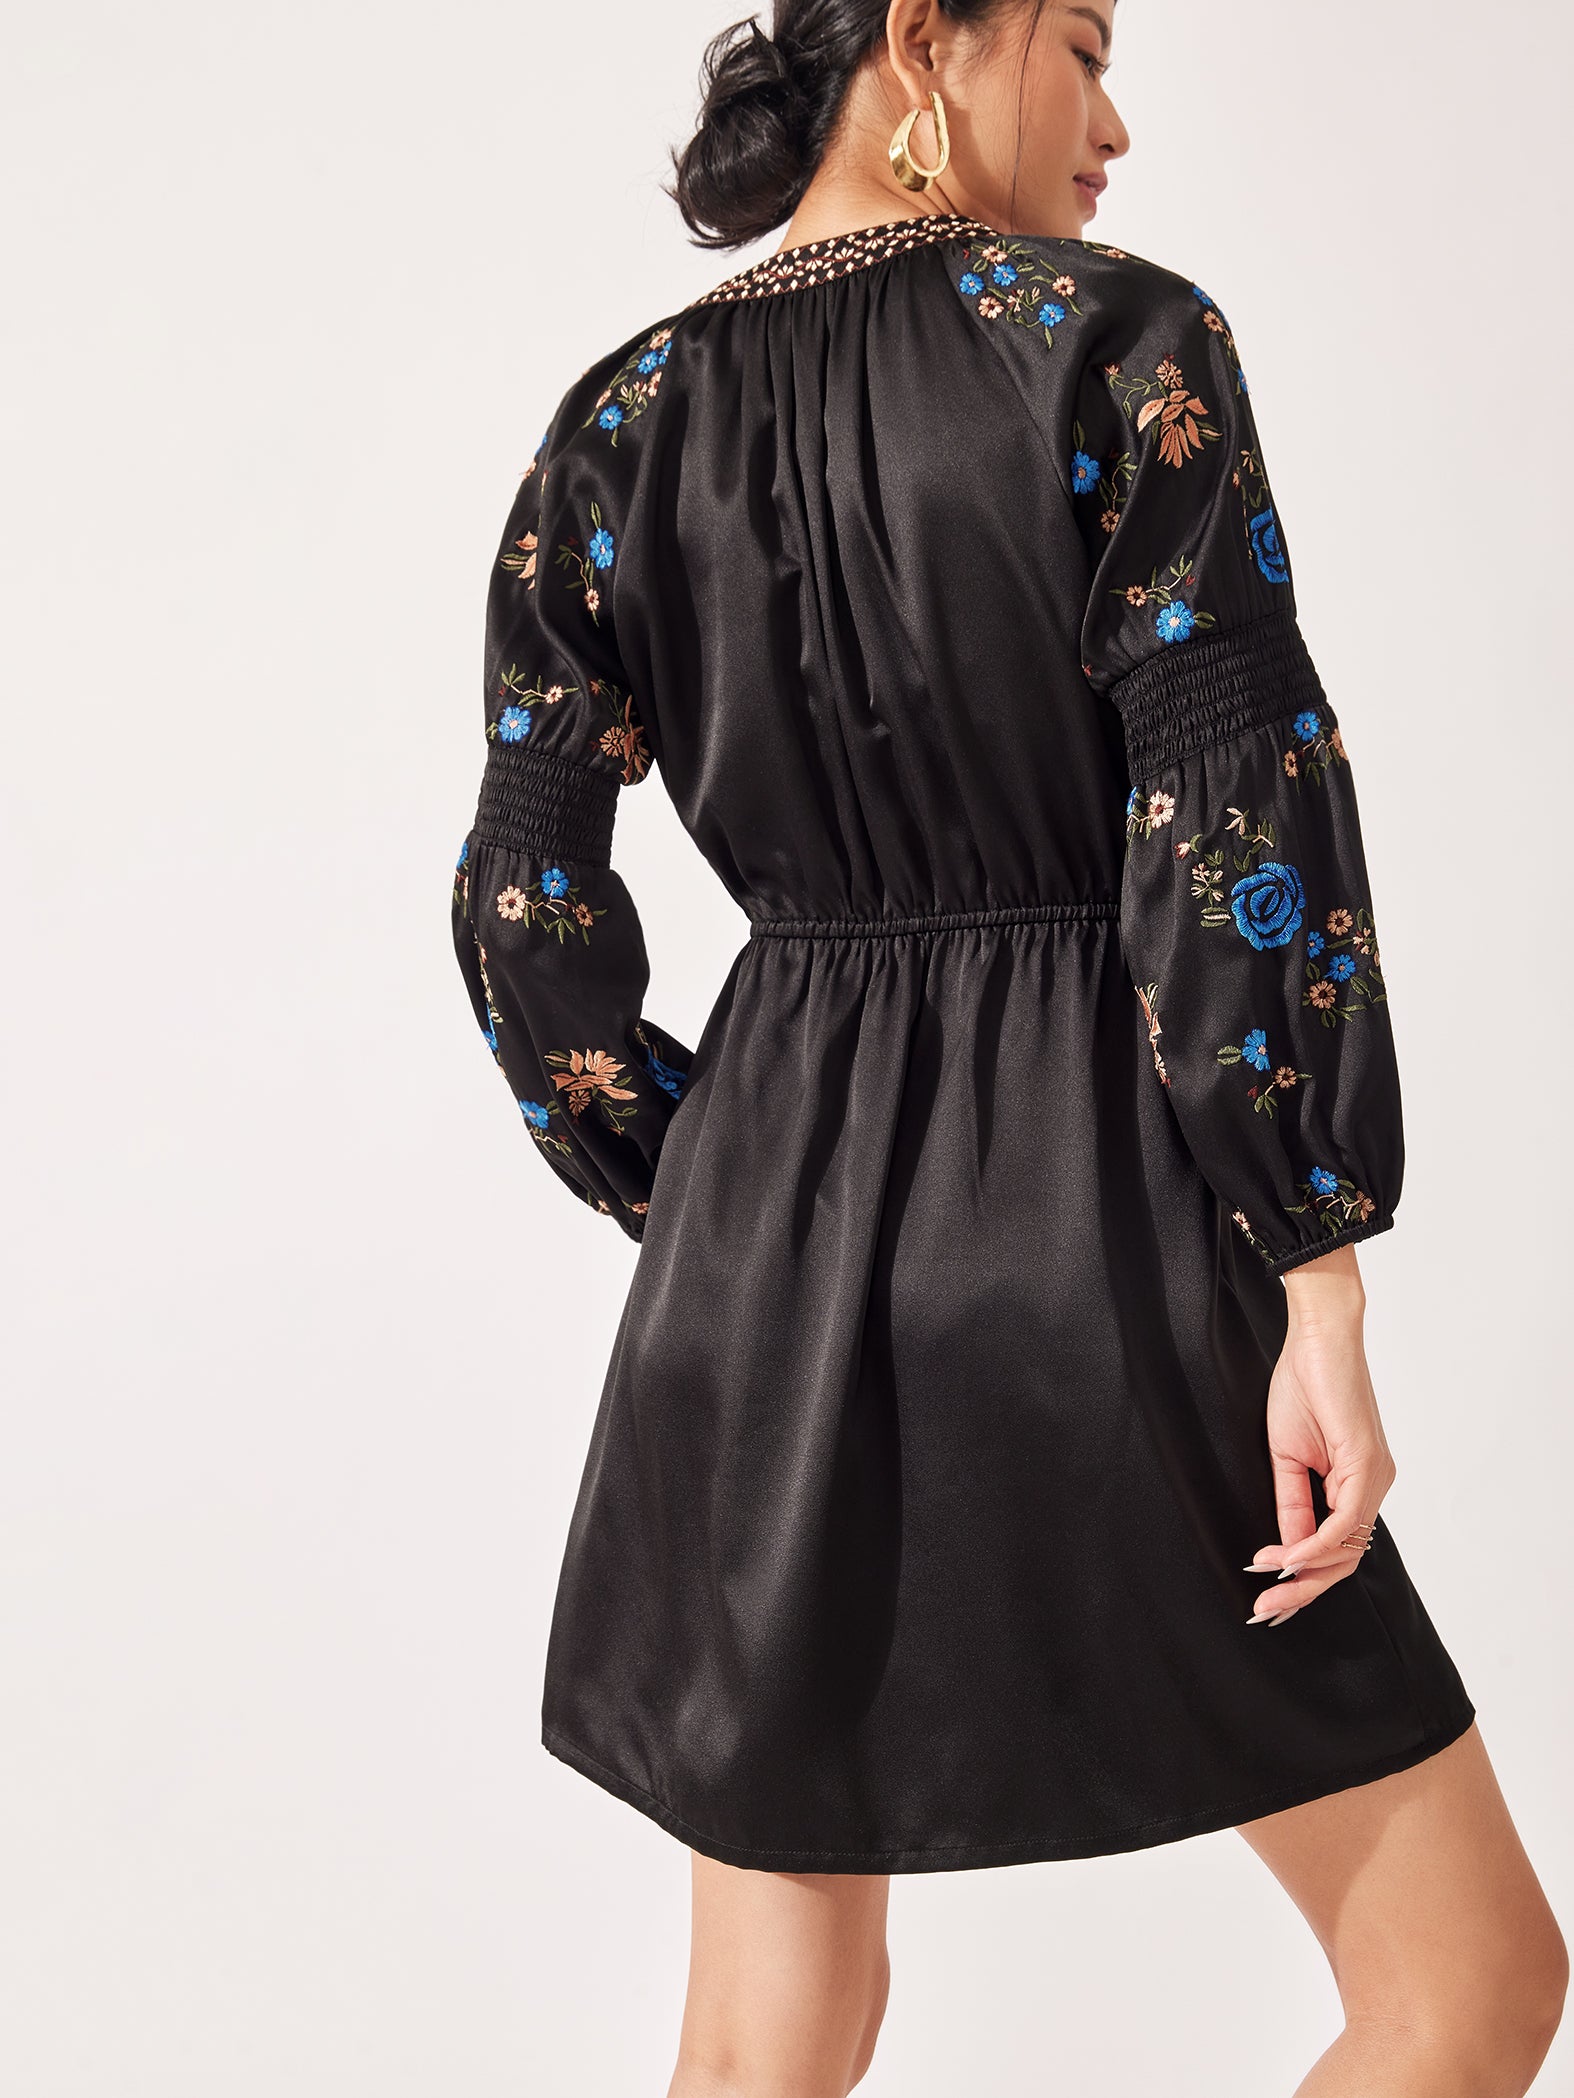 Black Floral Embroidered Dress